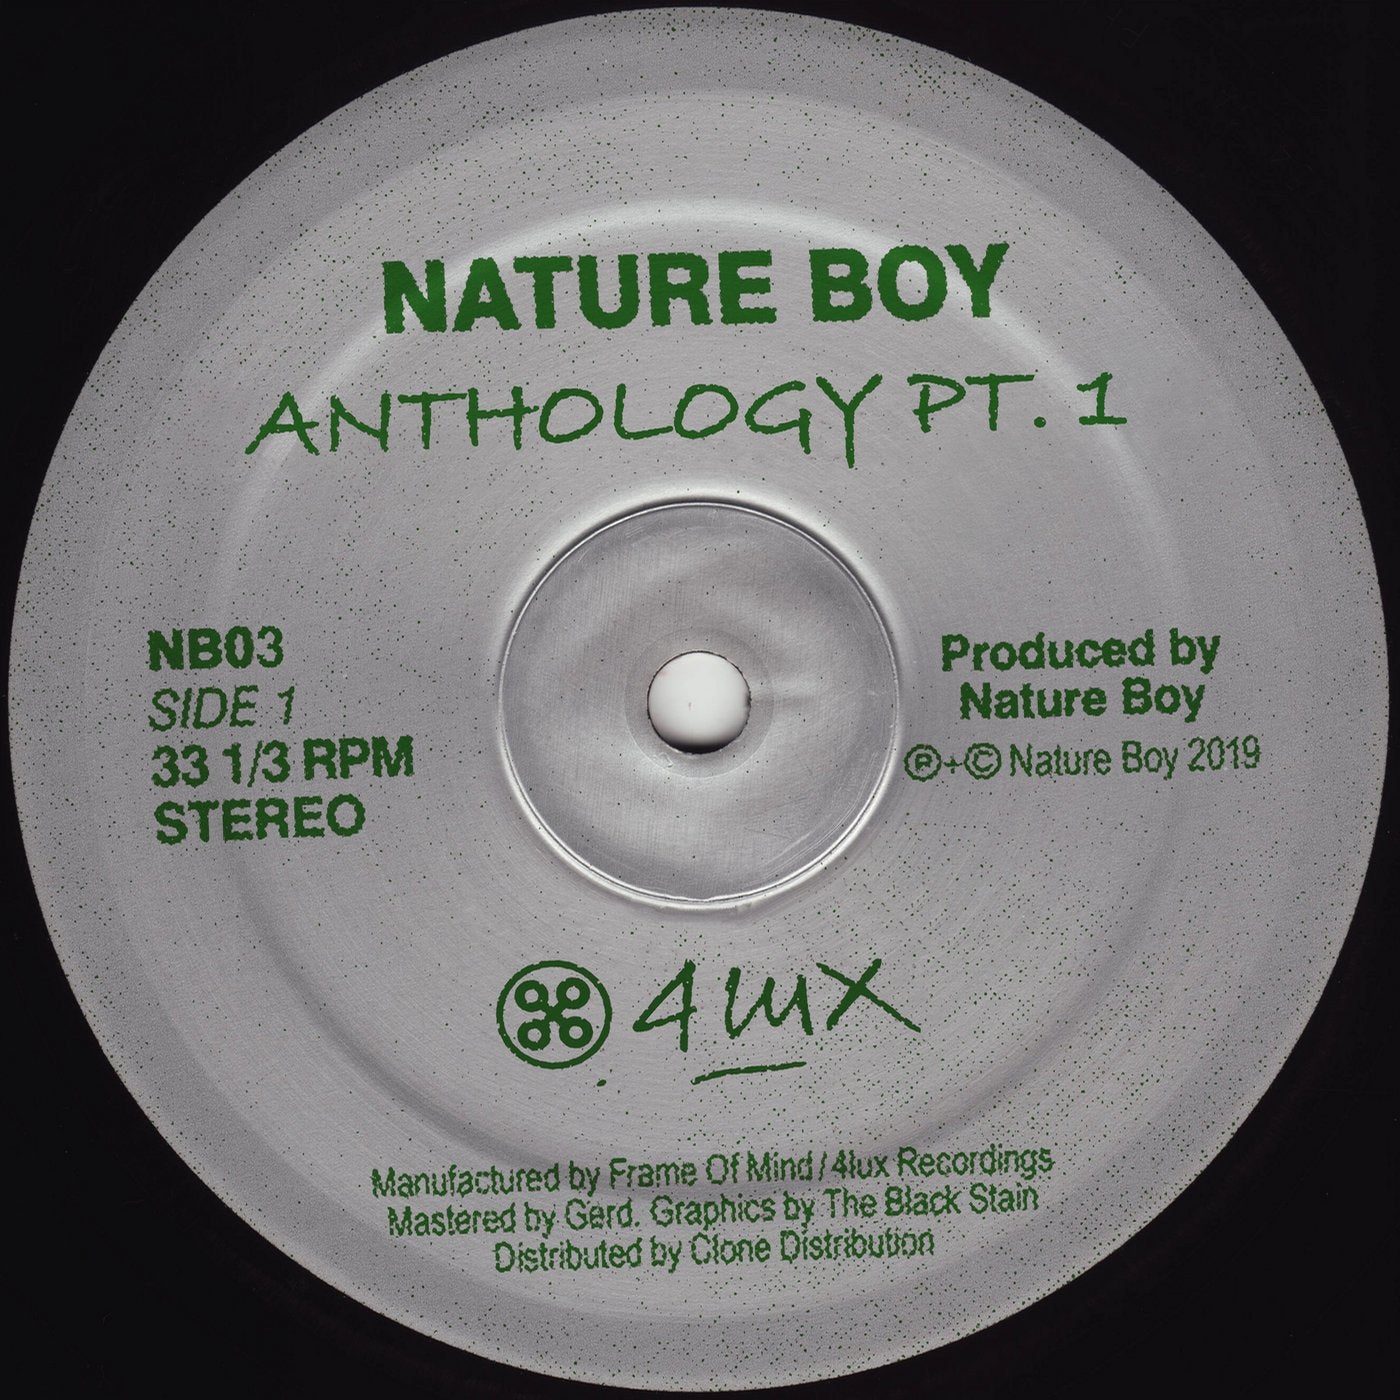 Demo mix. Nature boy слушать.